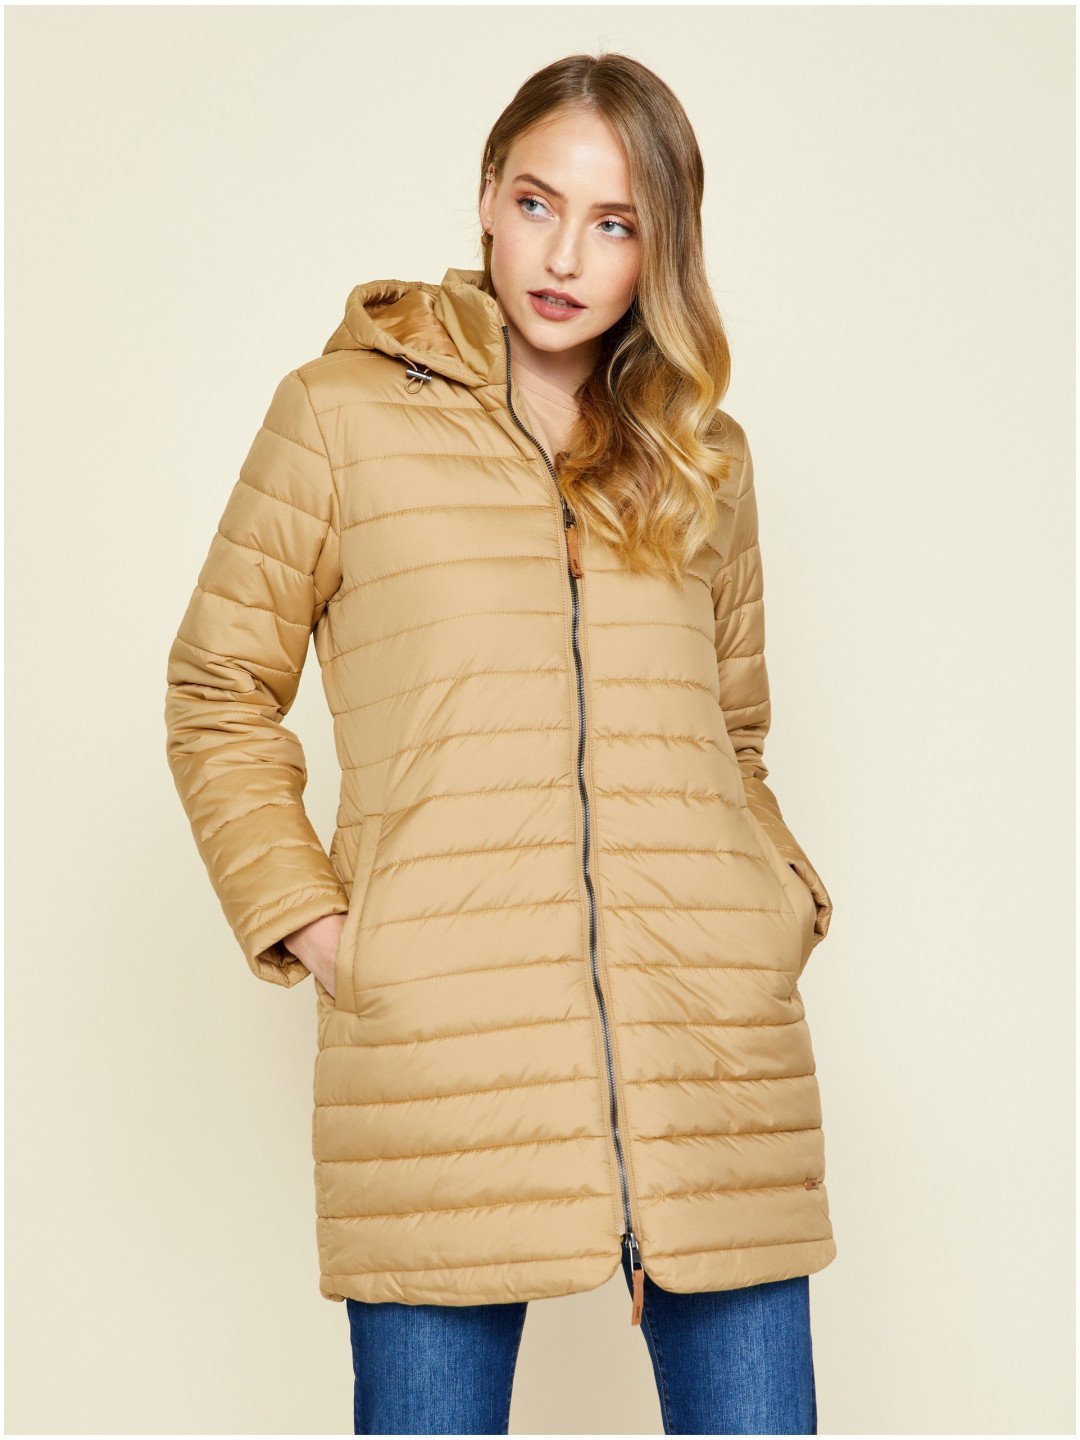 Zlatá dámská prošívaná prodloužená zimní bunda s kapucí ZOOT lab Molly